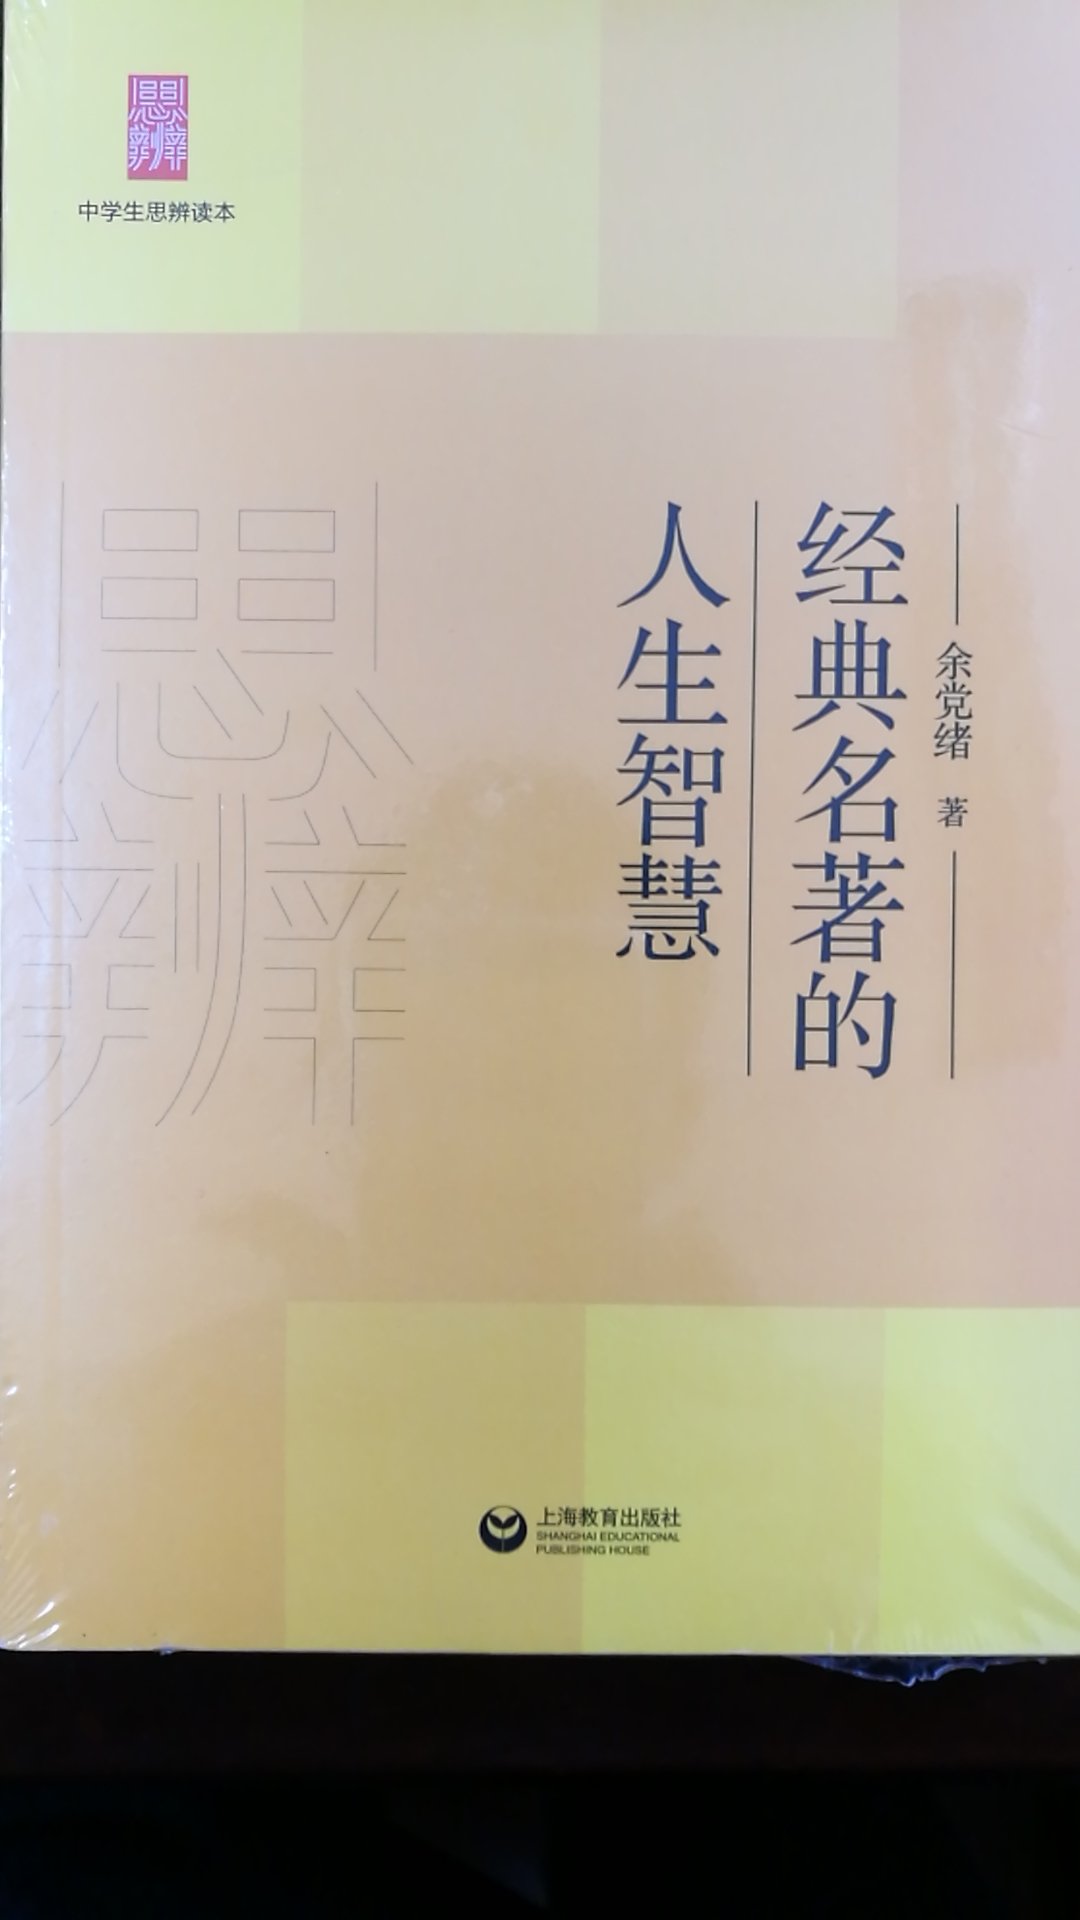 上海老师写的《经典名著的人生智慧》，买来给初中生读，以期提高阅读鉴赏水平。